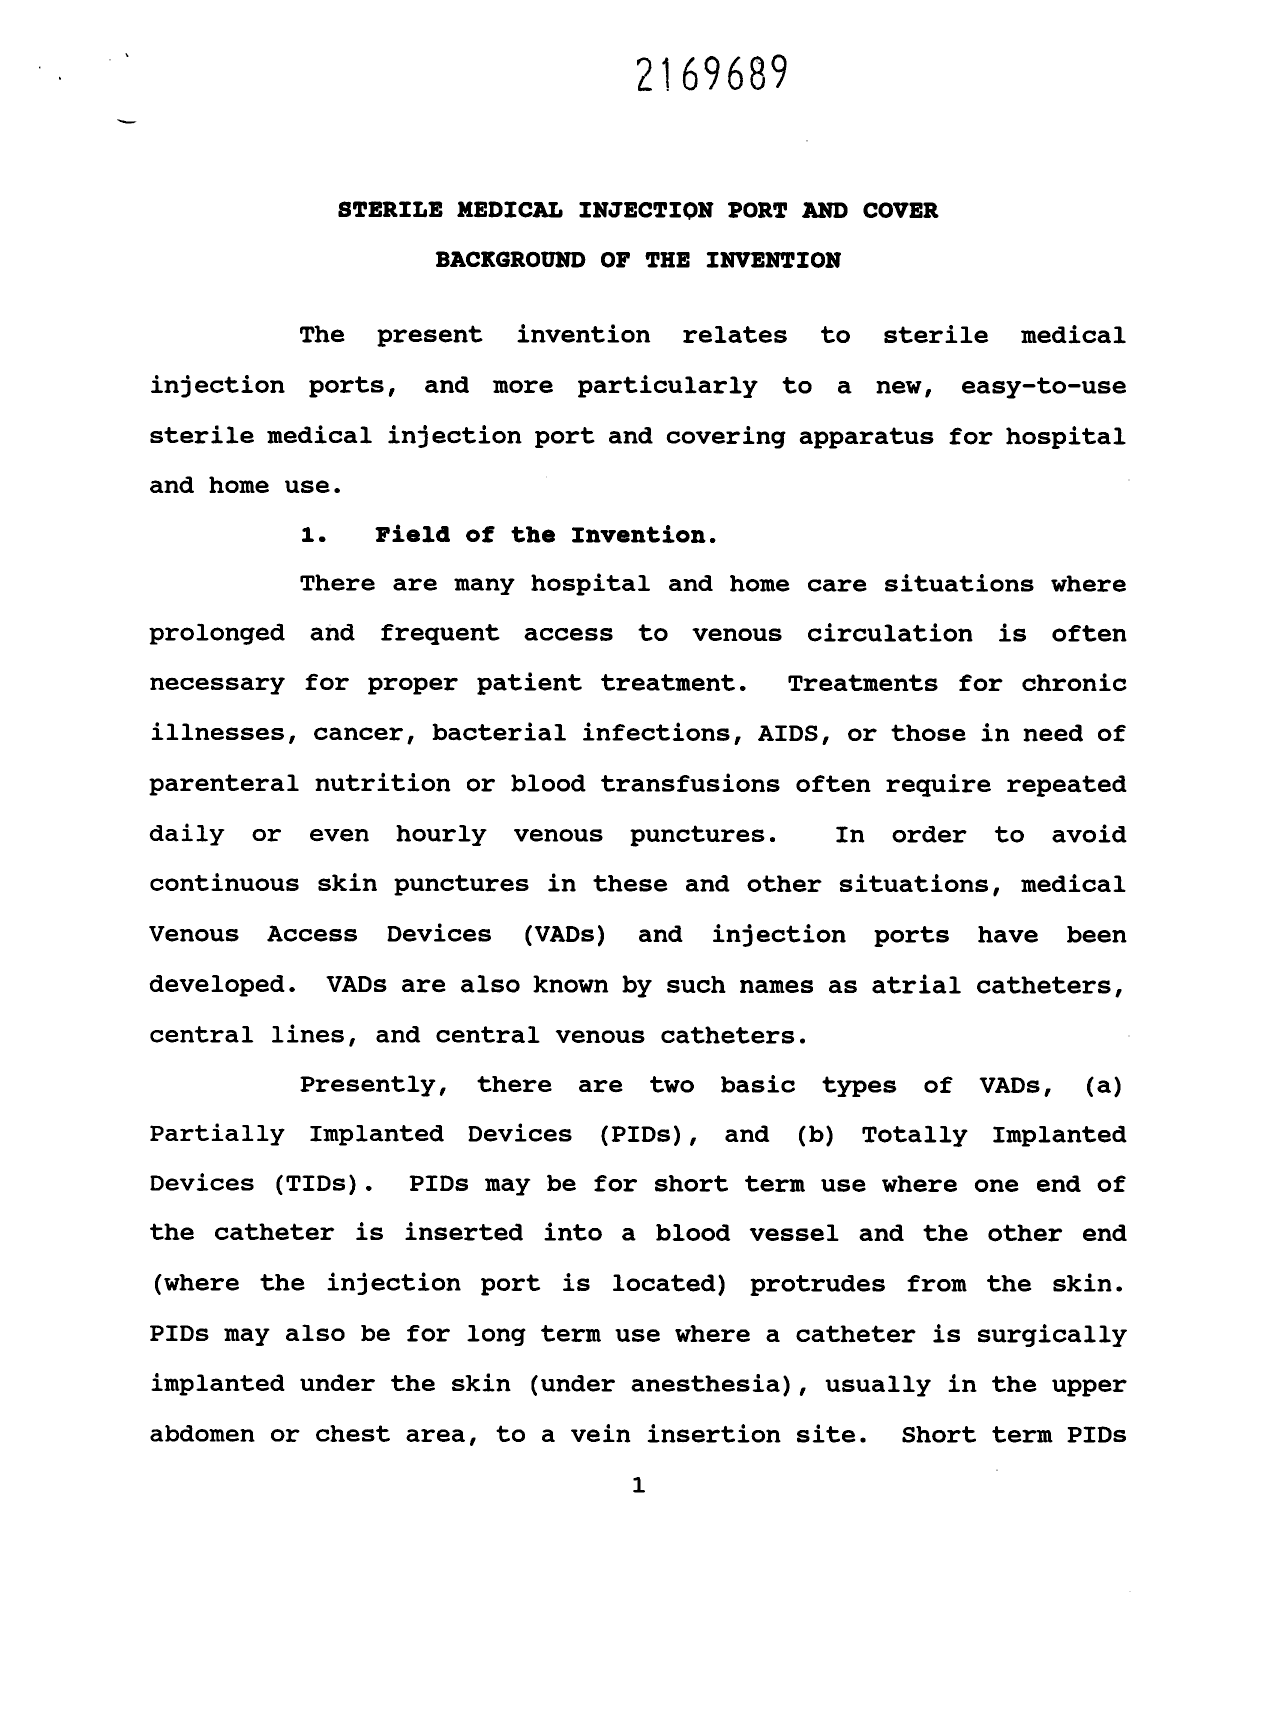 Canadian Patent Document 2169689. Description 19960216. Image 1 of 18